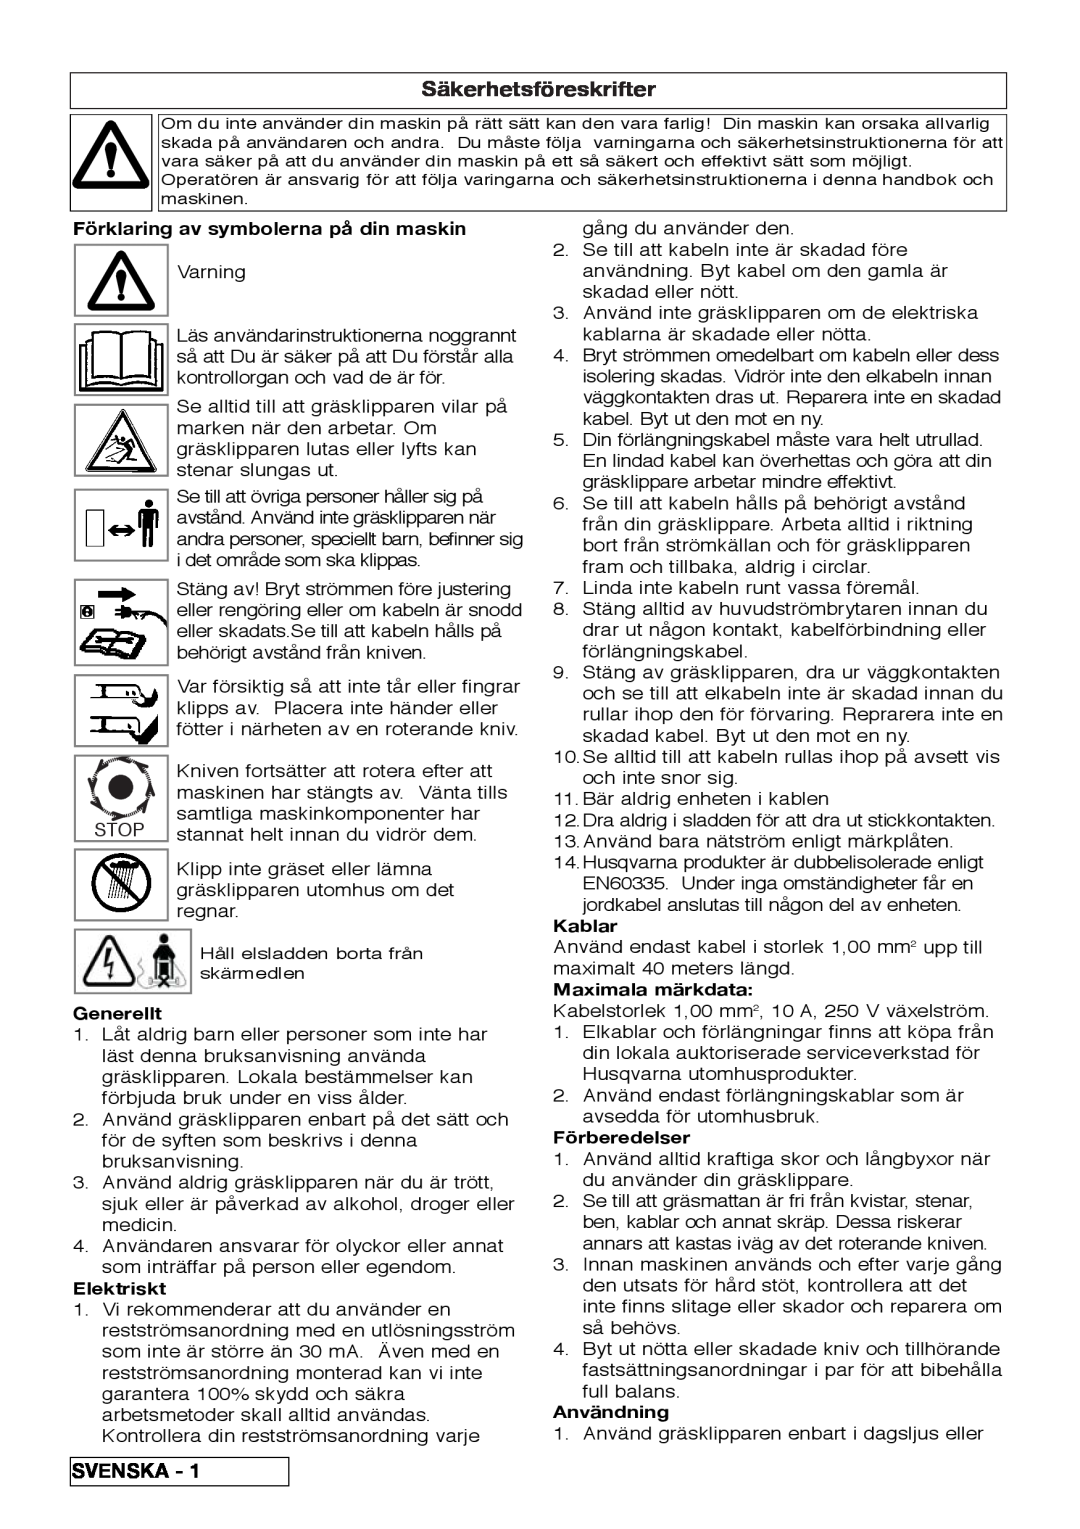 Flymo VM032 manual Säkerhetsföreskrifter, Svenska, Förklaring av symbolerna på din maskin, Generellt, Elektriskt, Kablar 